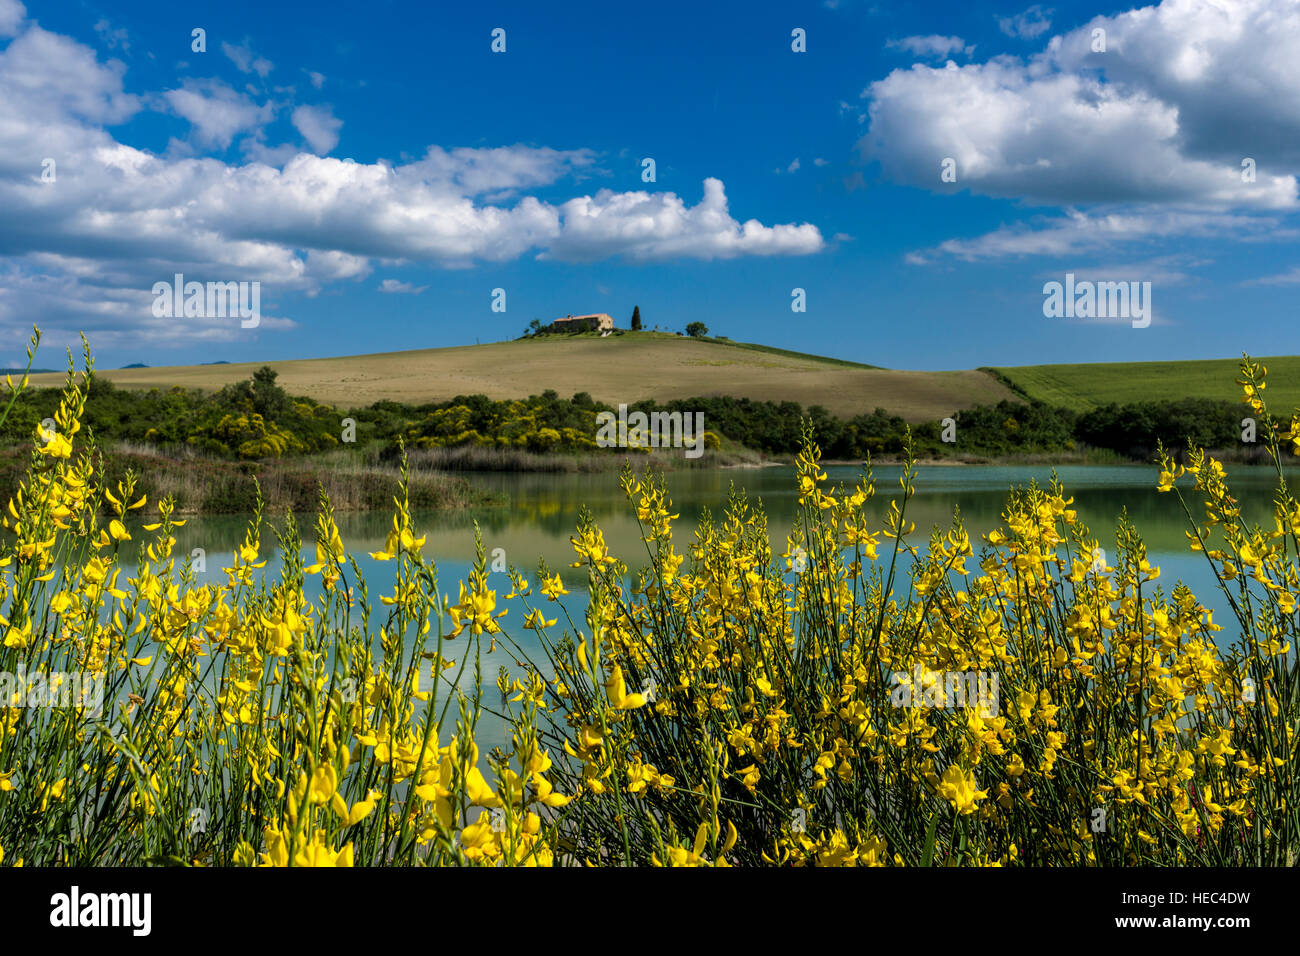 Verde tipico paesaggio toscano in val d'Orcia con una fattoria su una collina, un lago, giallo le ginestre e blu cielo nuvoloso Foto Stock